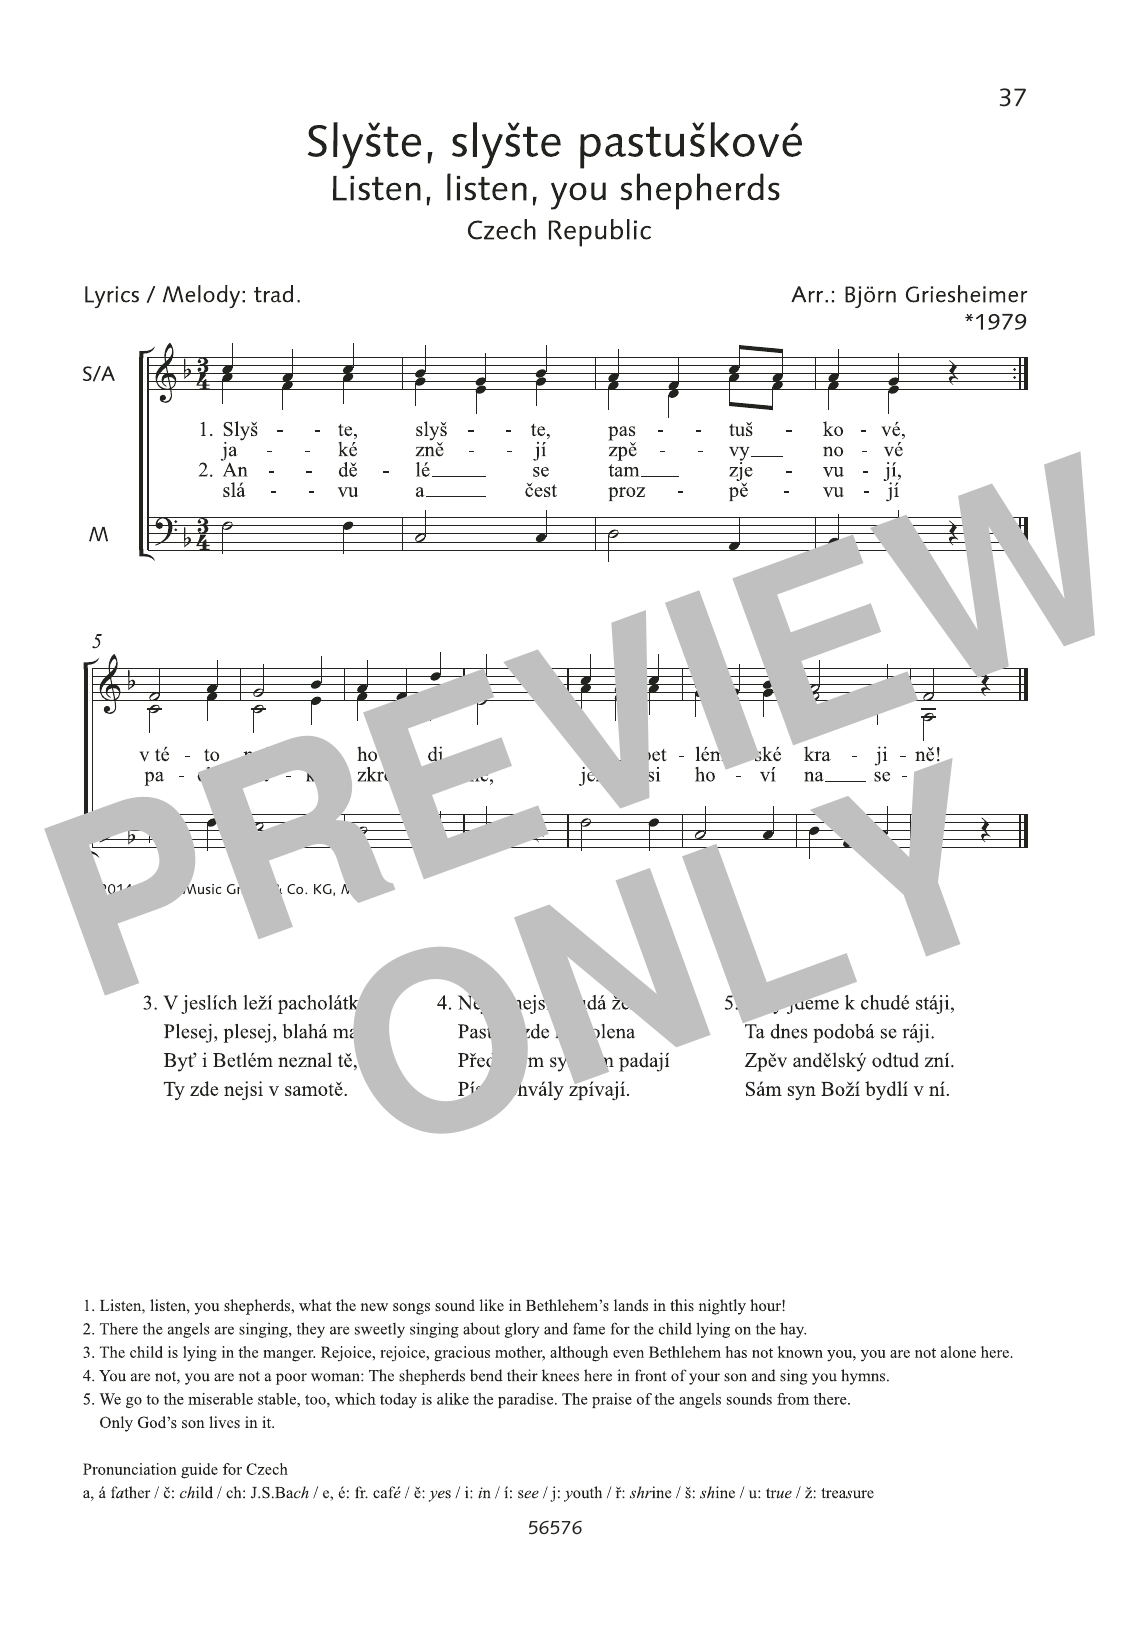 Björn Griesheimer Slyste, slyste pastuskove Sheet Music Notes & Chords for Choral - Download or Print PDF